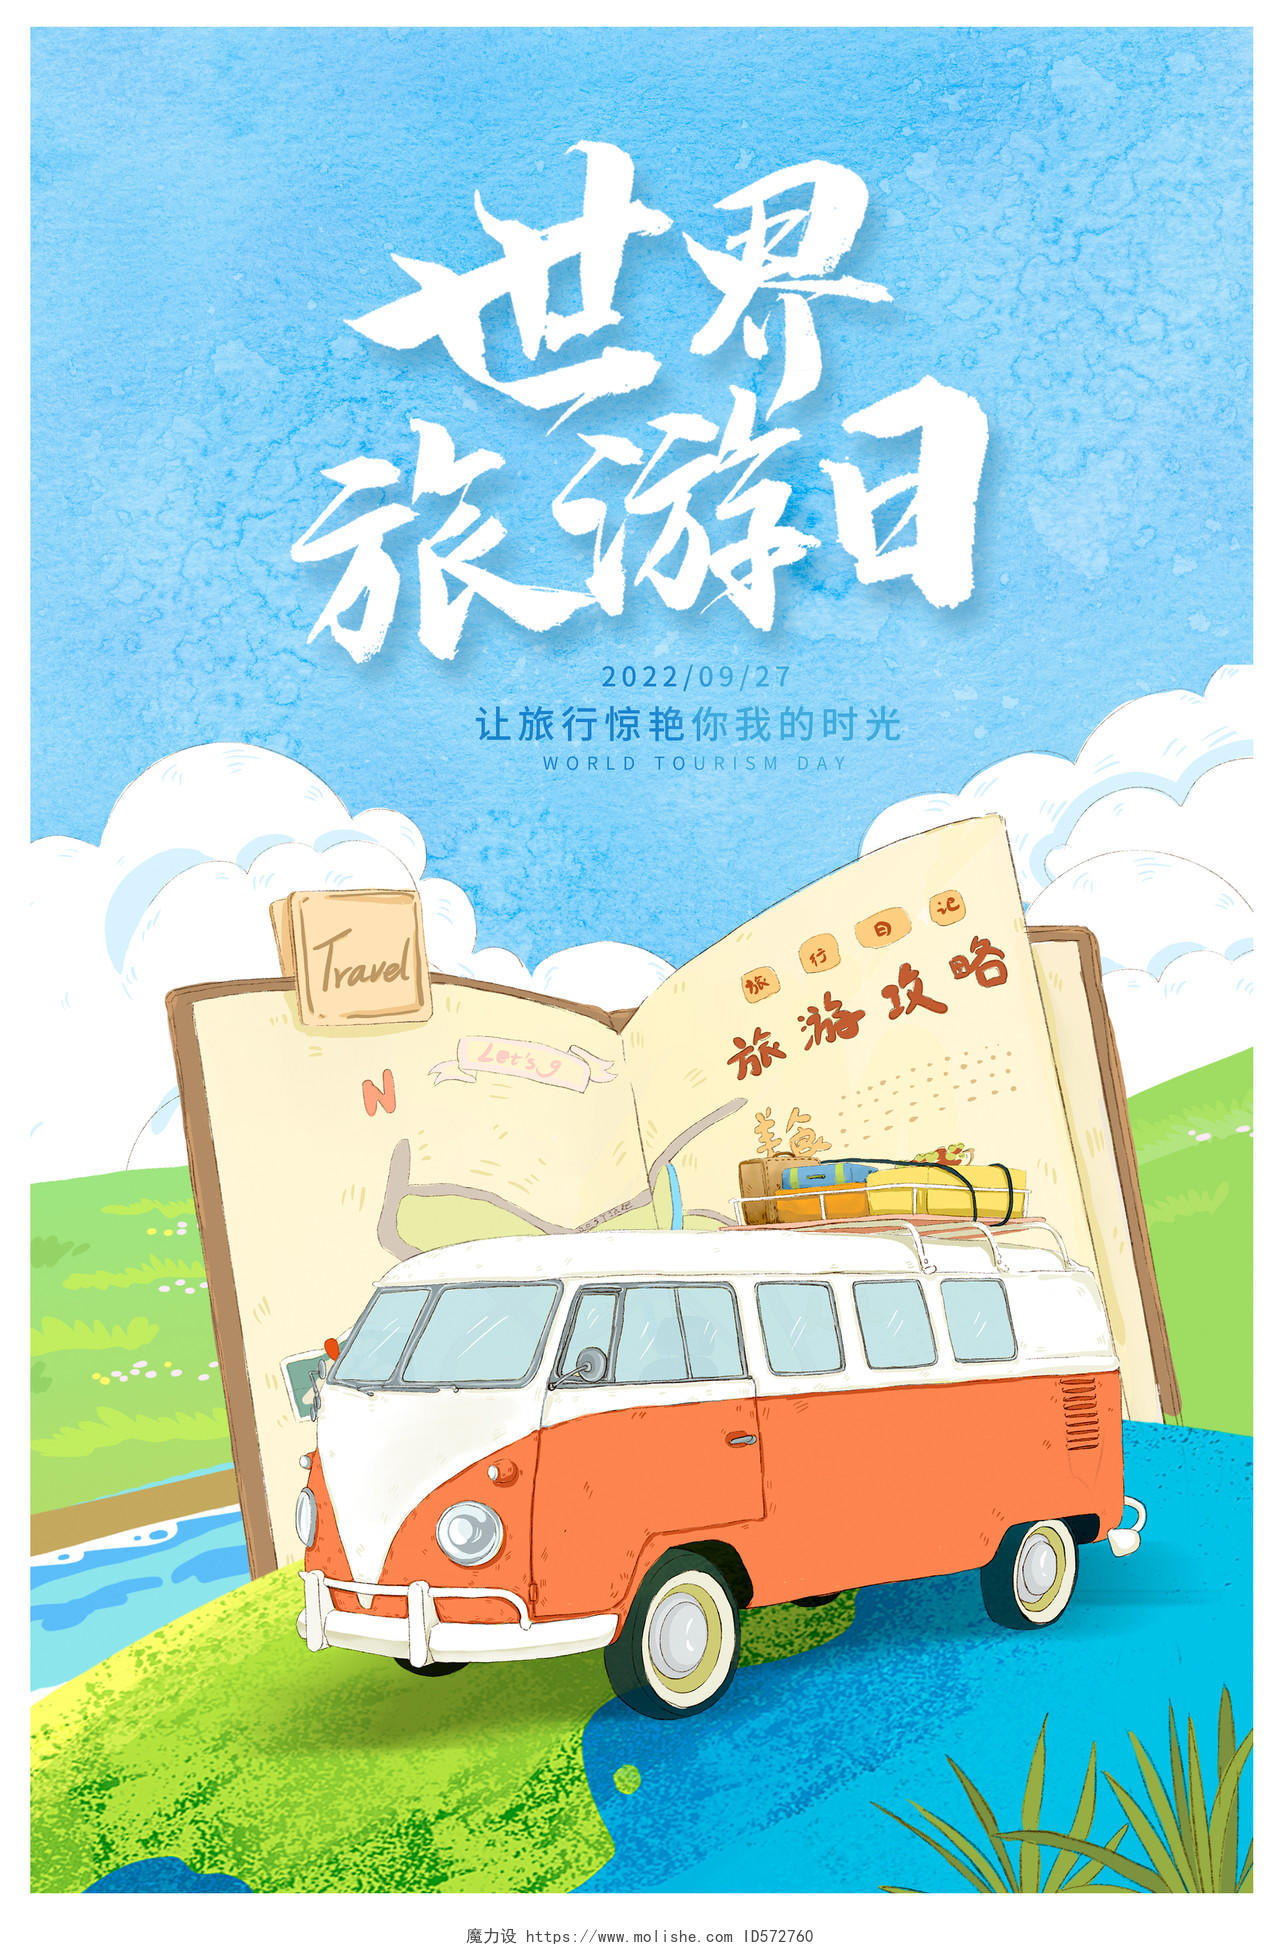 蓝色插画世界旅游日宣传海报设计